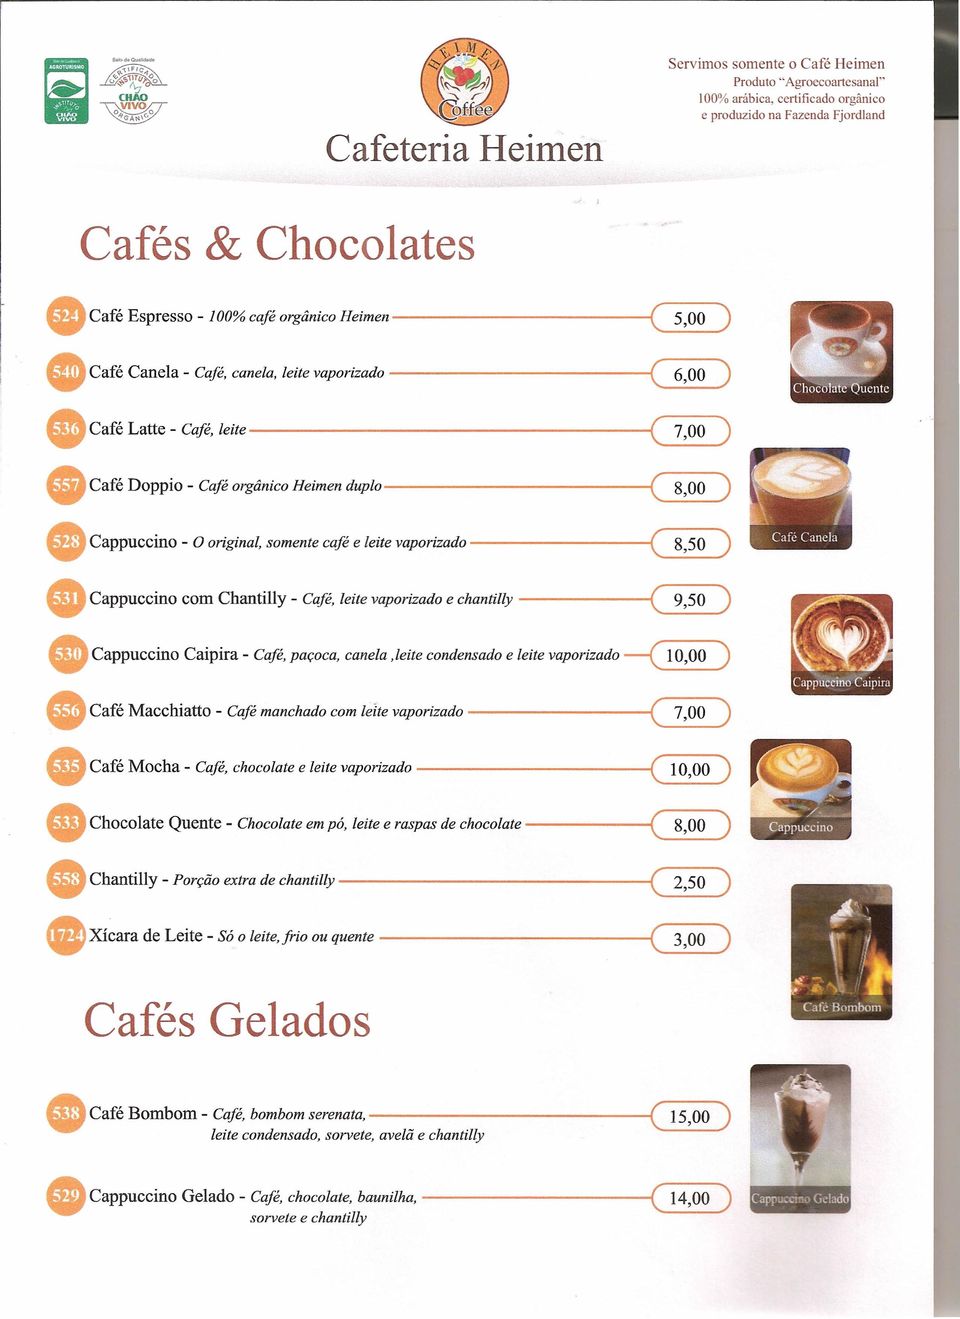 Chantilly - Café, leite vaporizado e chantilly --------i ( 8,50 ) ( 9,50 ) Cappuccino Caipira - Café, paçoca, canela.